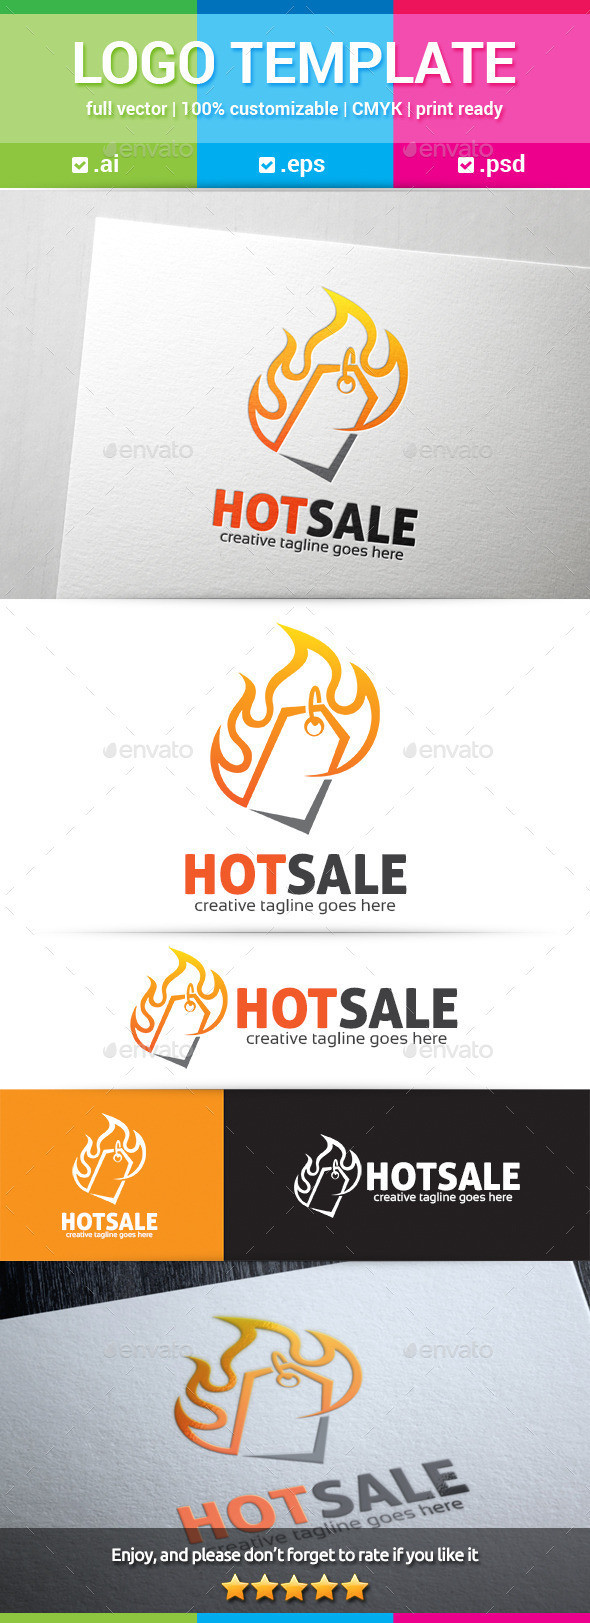 Hotsale